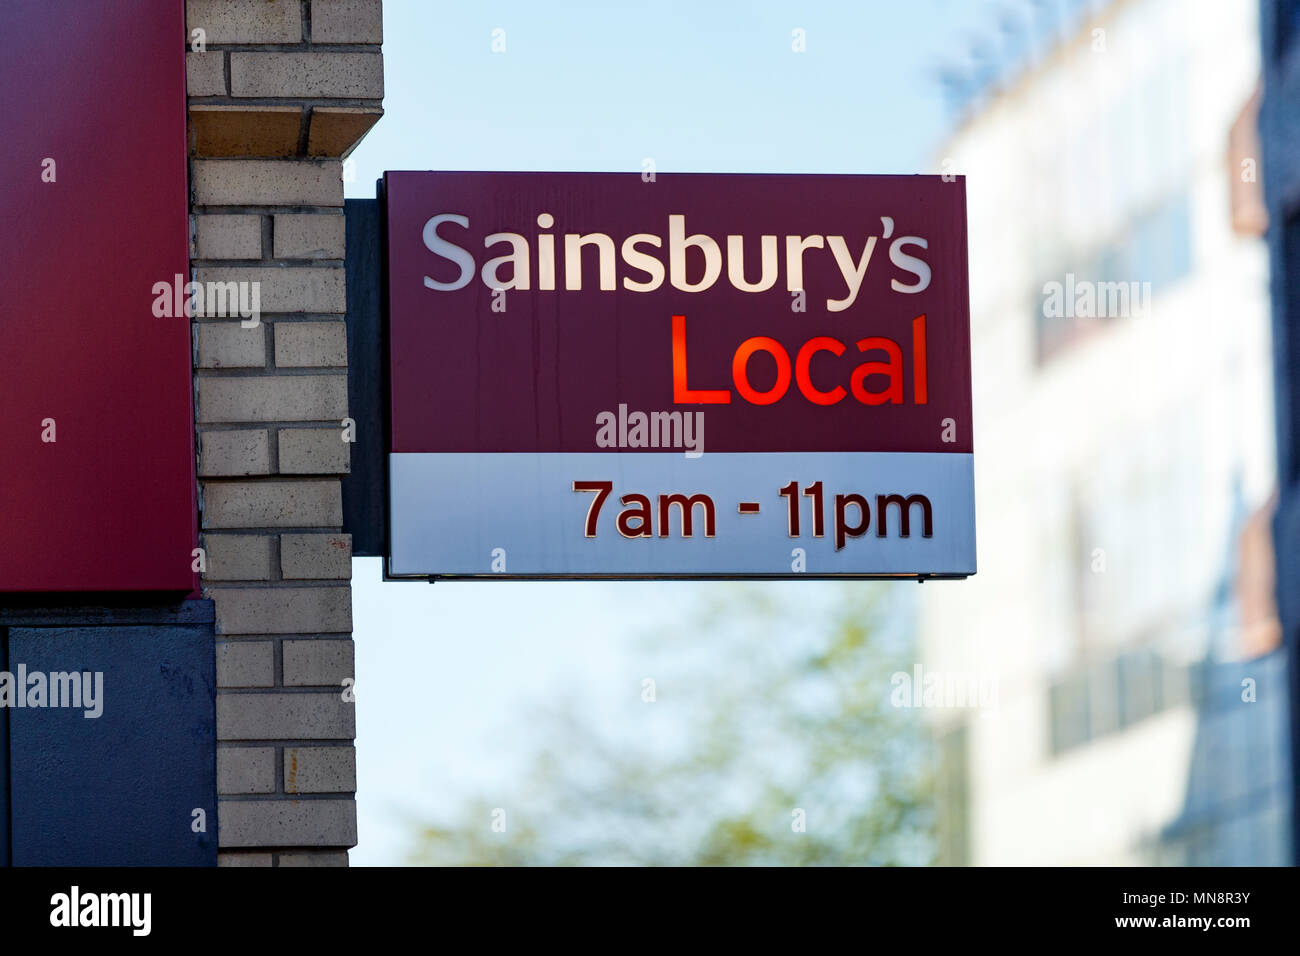 Ein Sainsbury Lokale in lokalen Logo das Vereinigte Königreich/Sainsbury's, Bequemlichkeit Sainsbury's Store, lokale Sainsbury's anmelden. Stockfoto